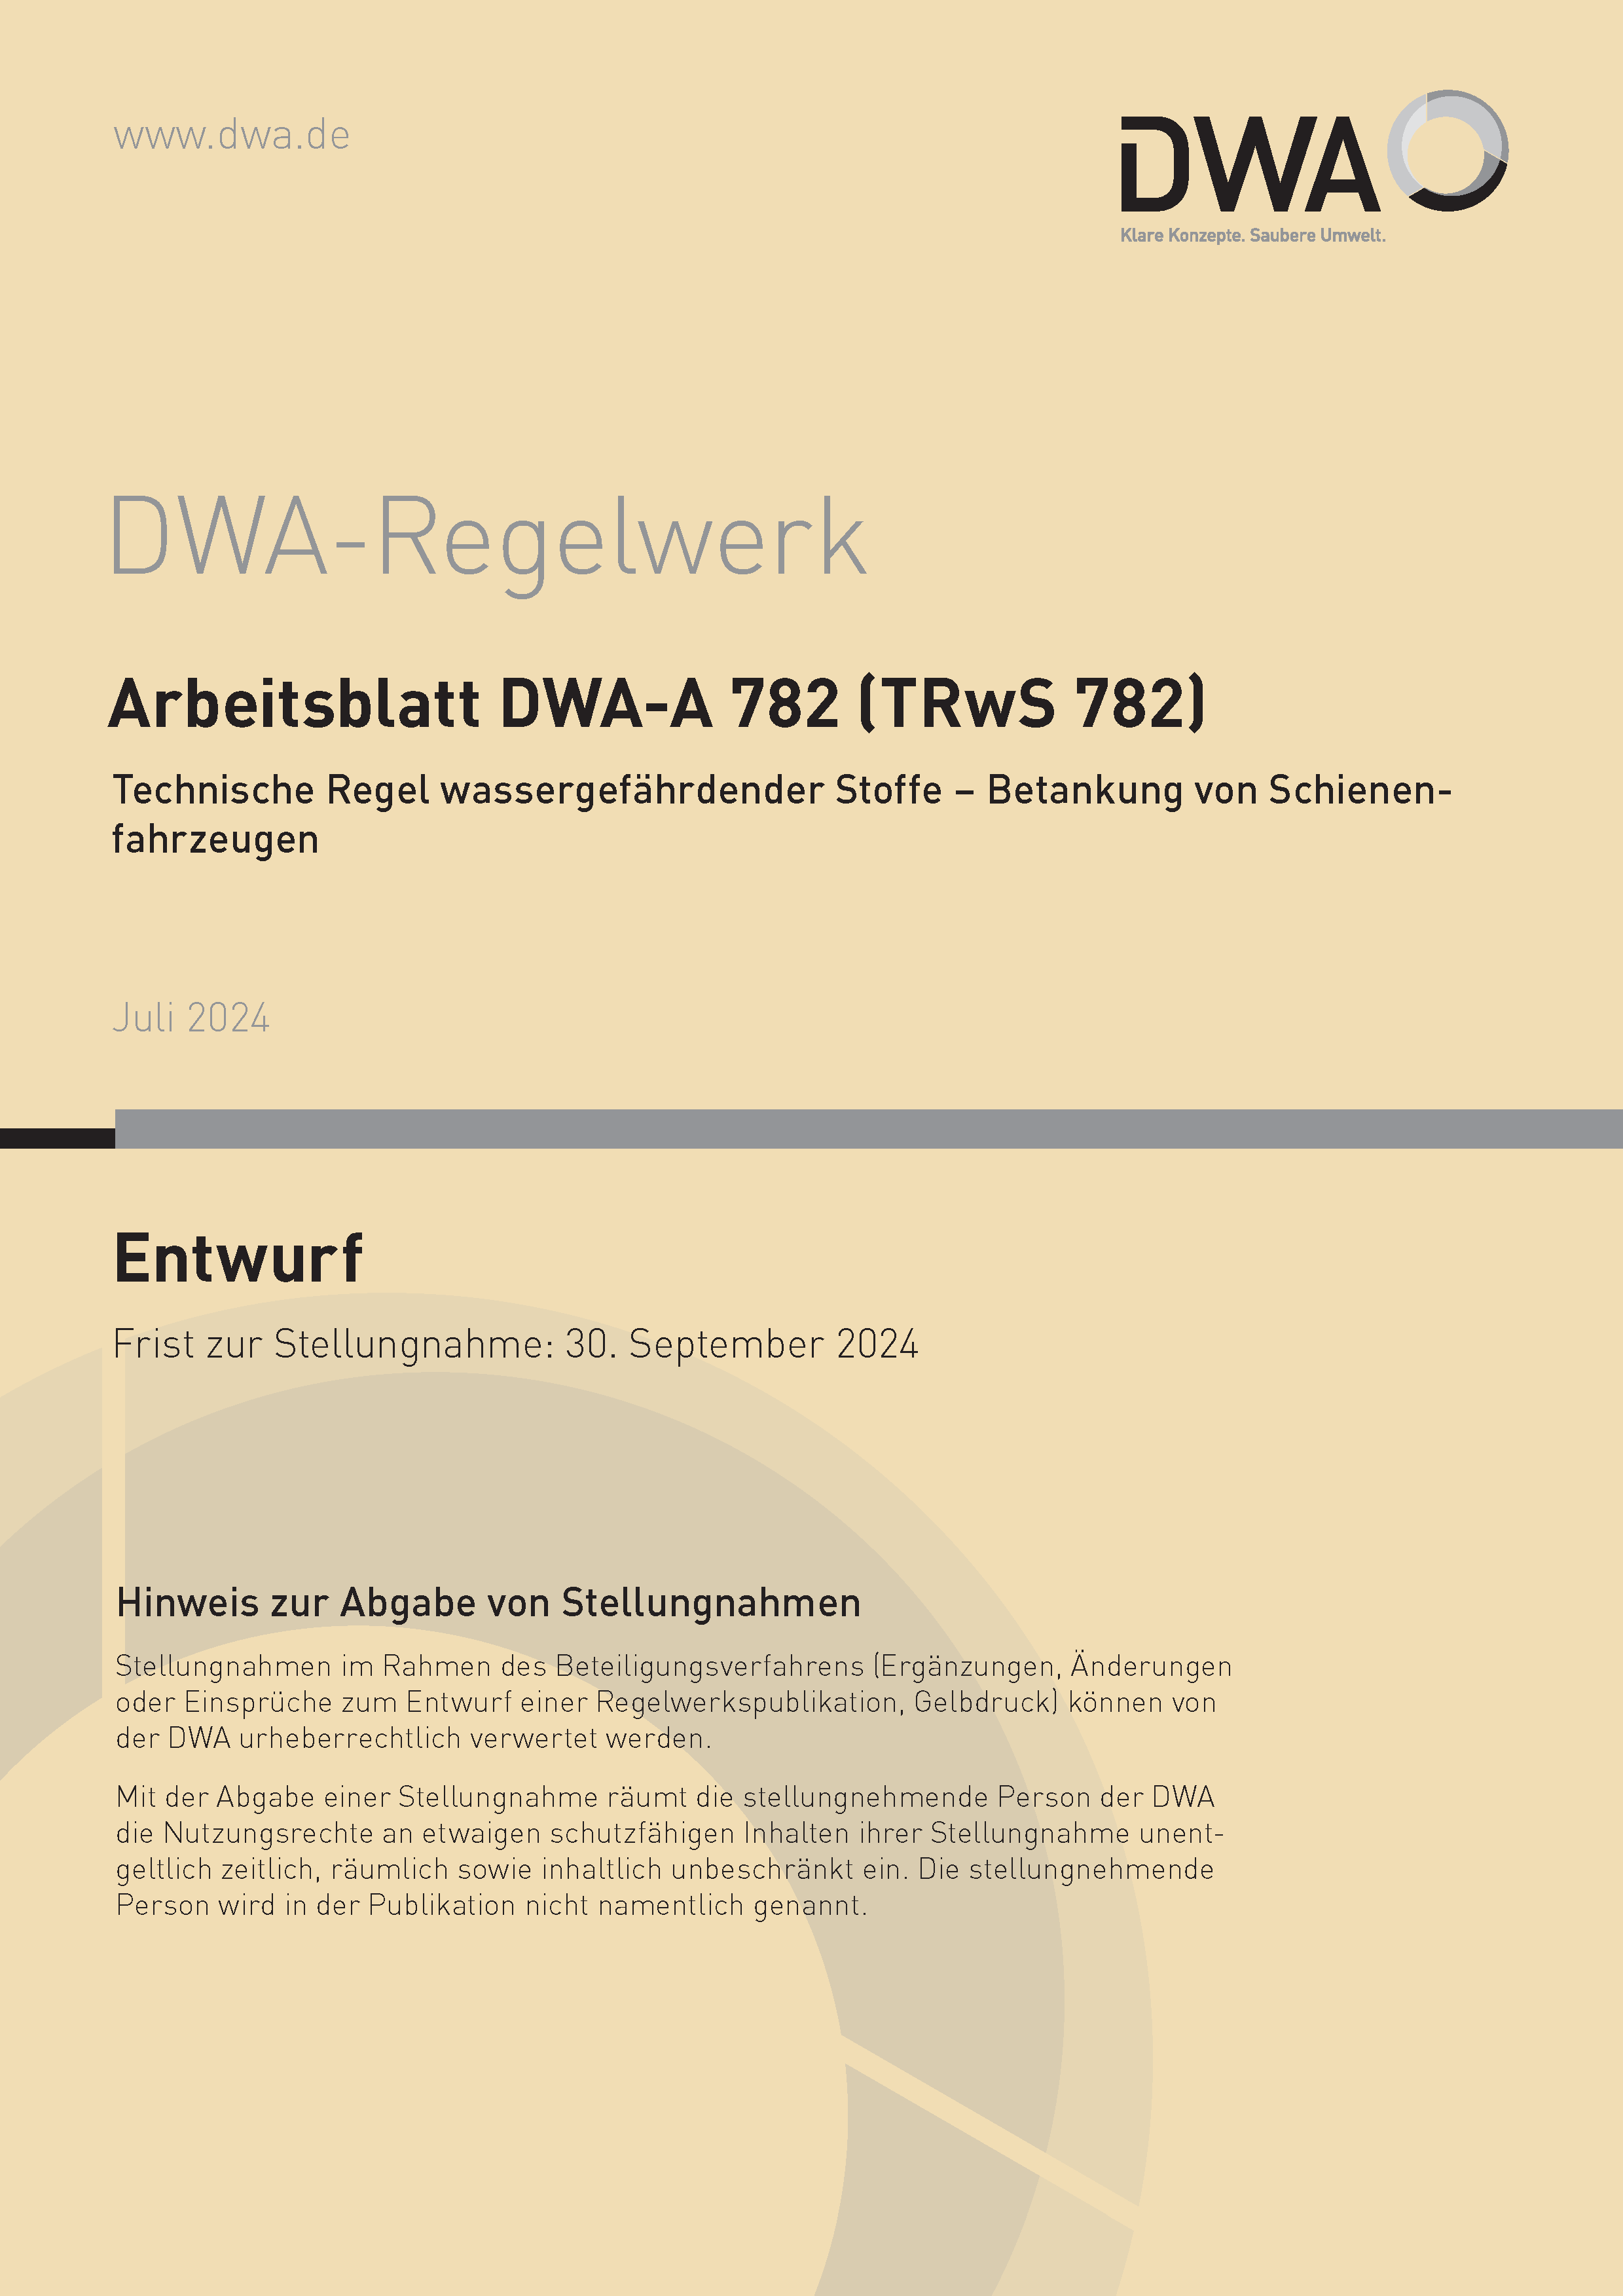 DWA-A 782 - Technische Regel wassergefährdender Stoffe (TRwS 782) - Betankung von Schienenfahrzeugen - Entwurf Juli 2024